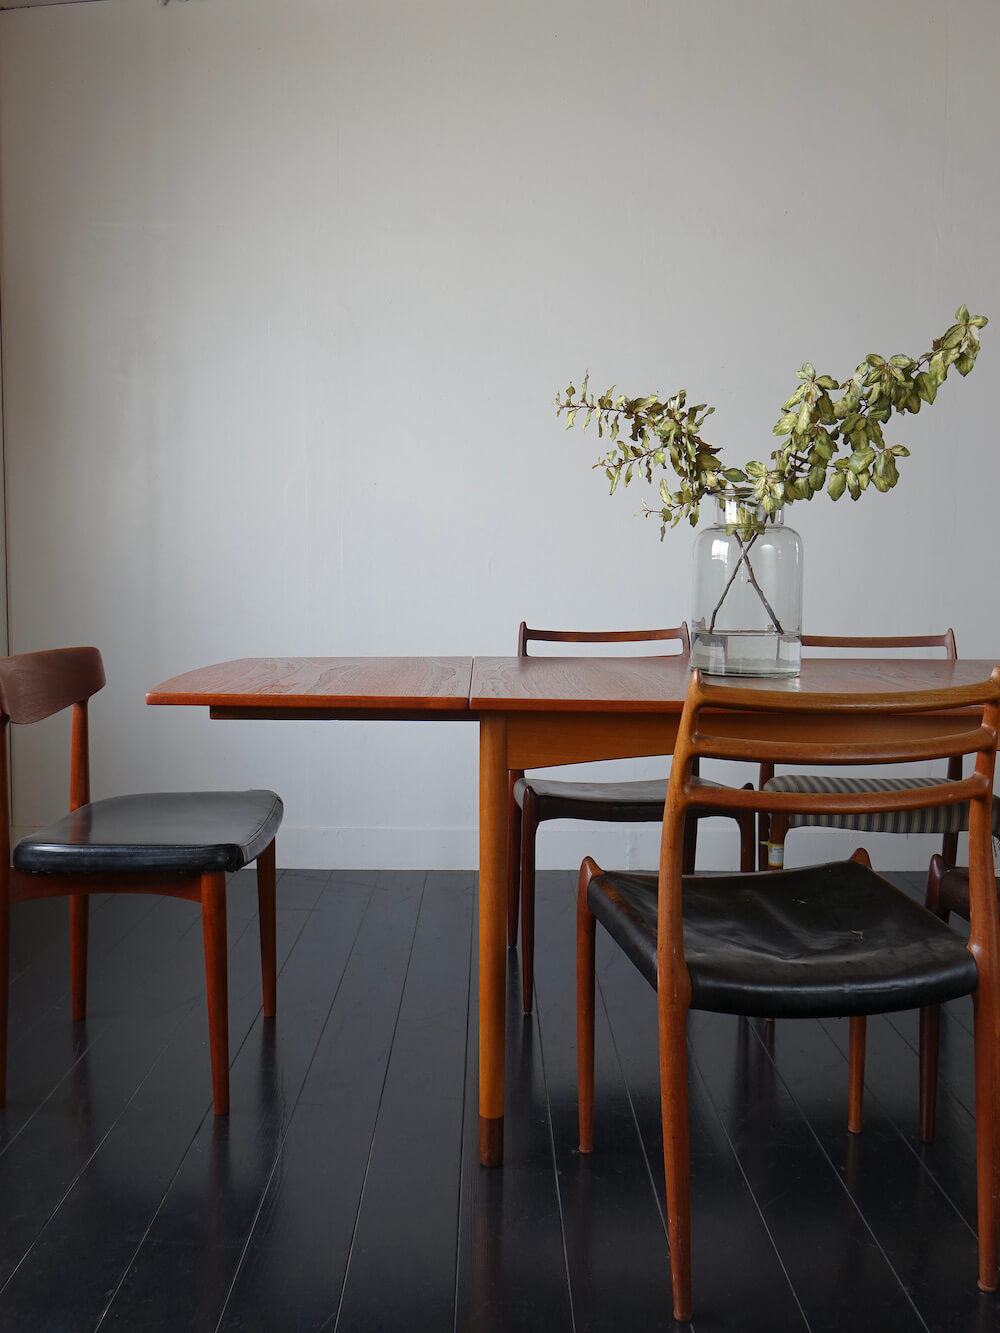 Dropleaf dining table by Børge Mogensen for FDB Mobler